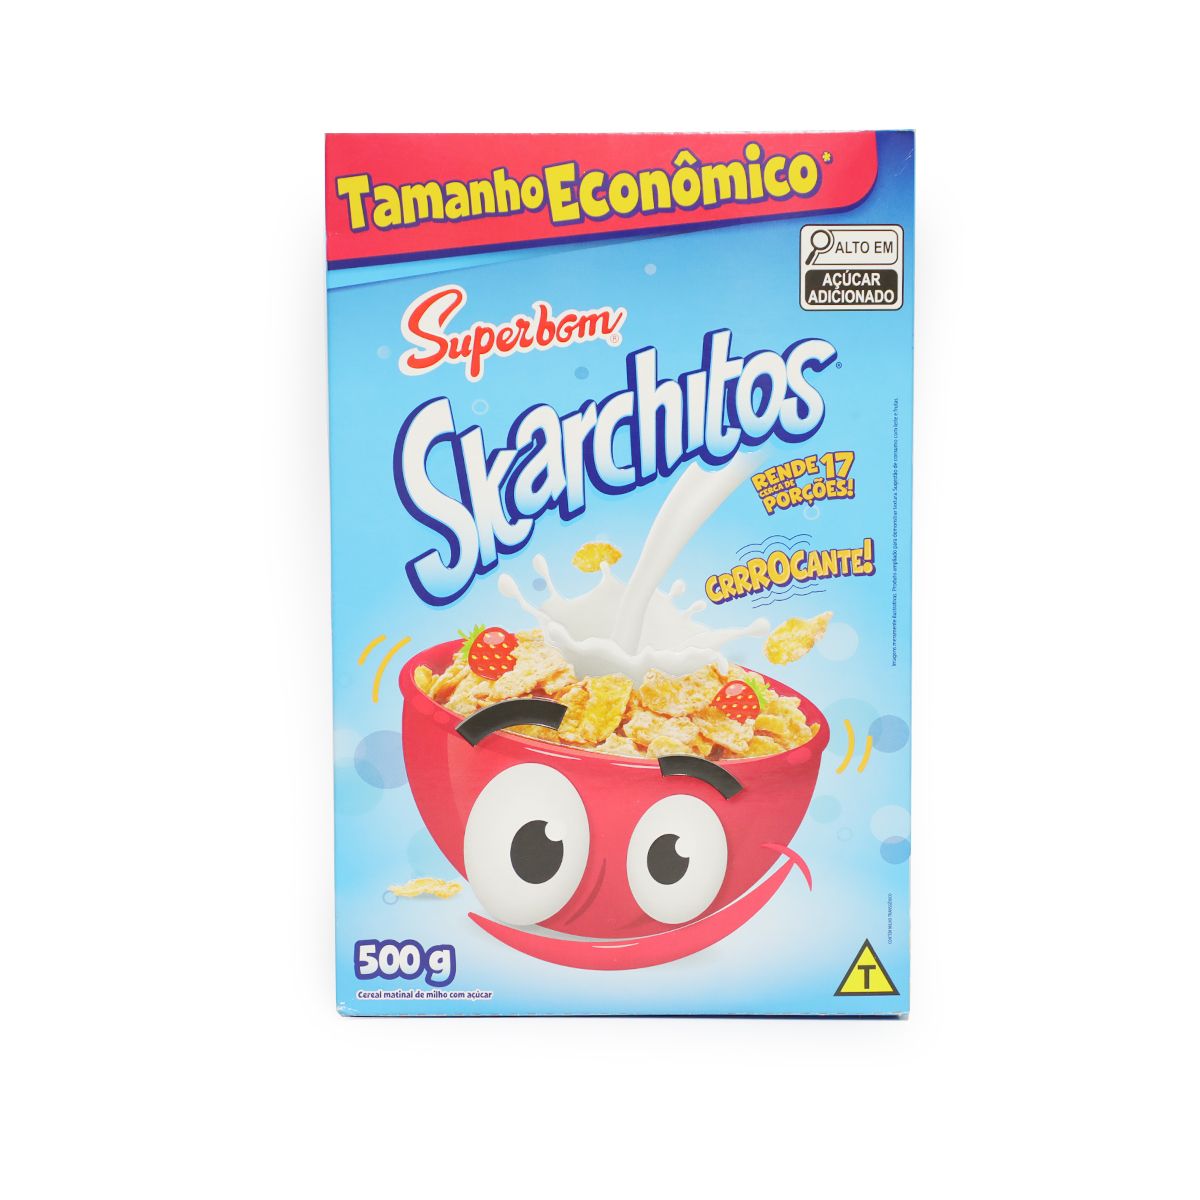 Cereal Matinal Superbom Skarchitos Tamanho Econômico 500g